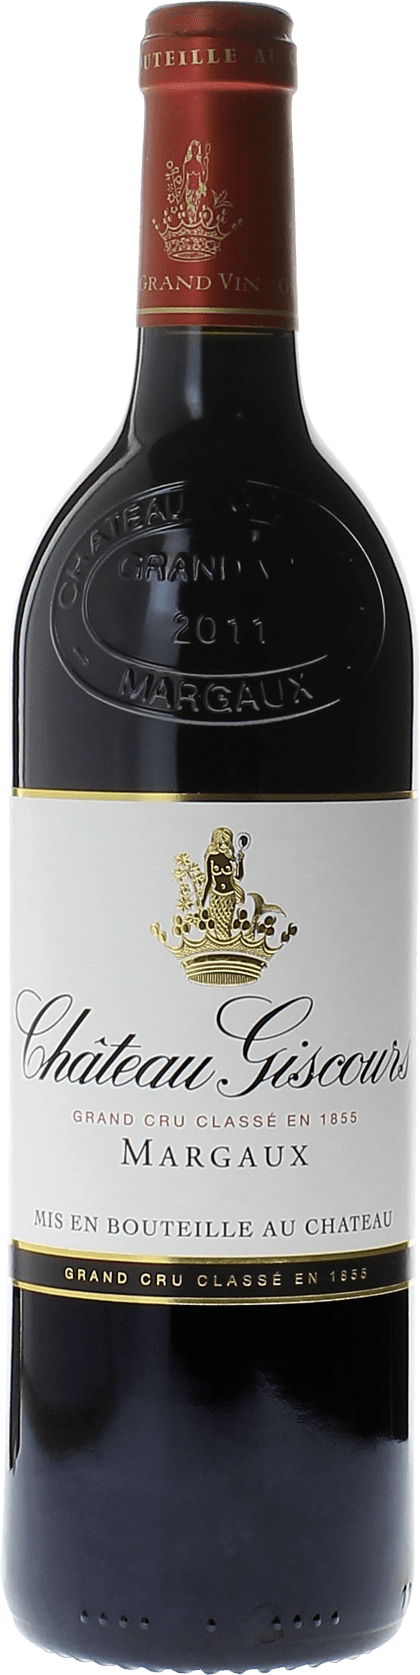 Giscours 2016 3me Grand cru class Margaux, Bordeaux rouge